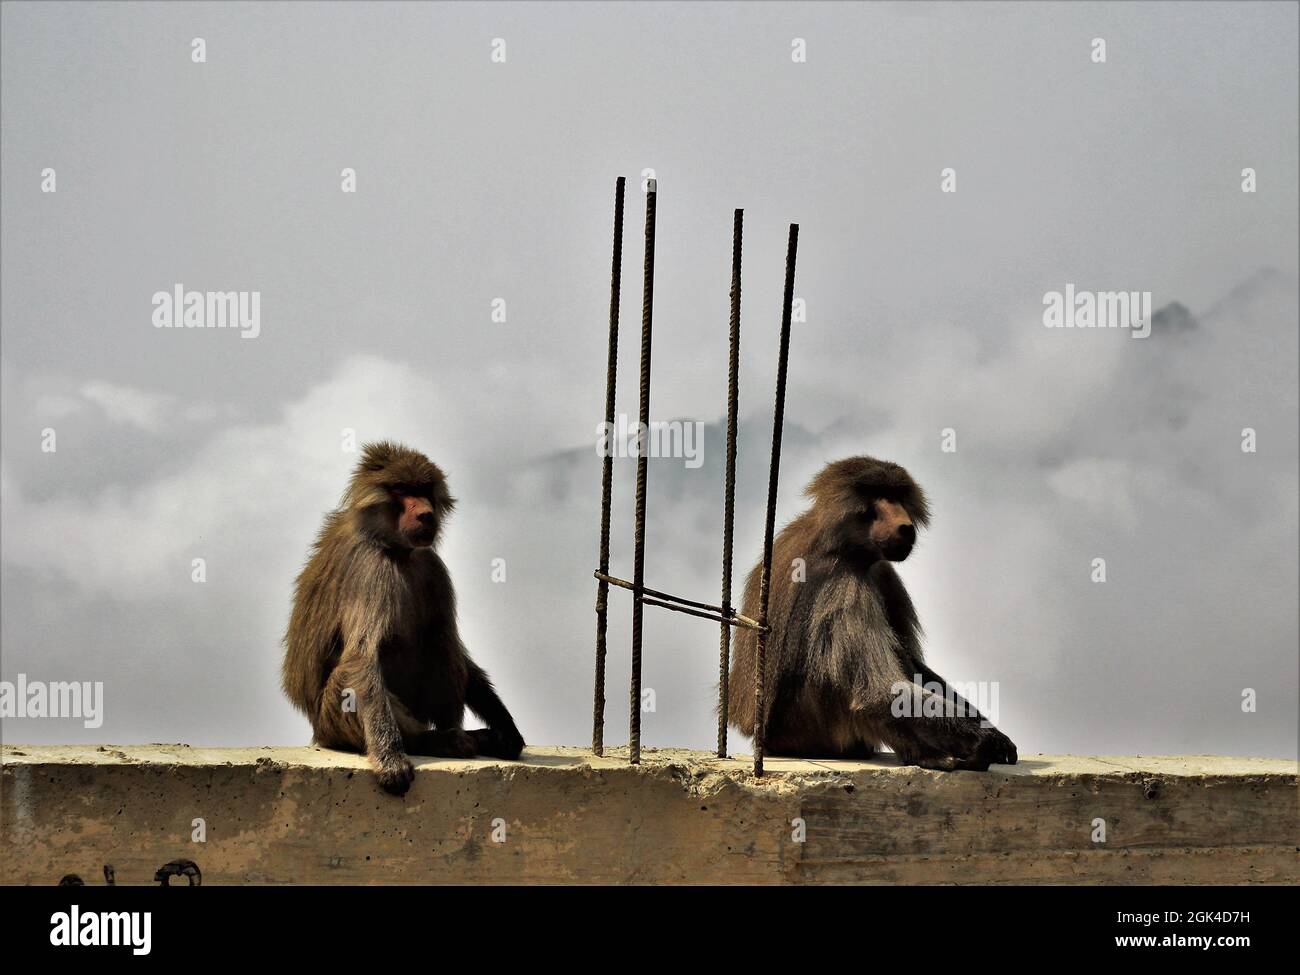 Triste storia vera, queste scimmie coppia erano così libere, erano proprio fuori di uno zoo di Raghadan dove una scimmia era 'in prigione'. Questo è il modo in cui l'ho visto. Foto Stock